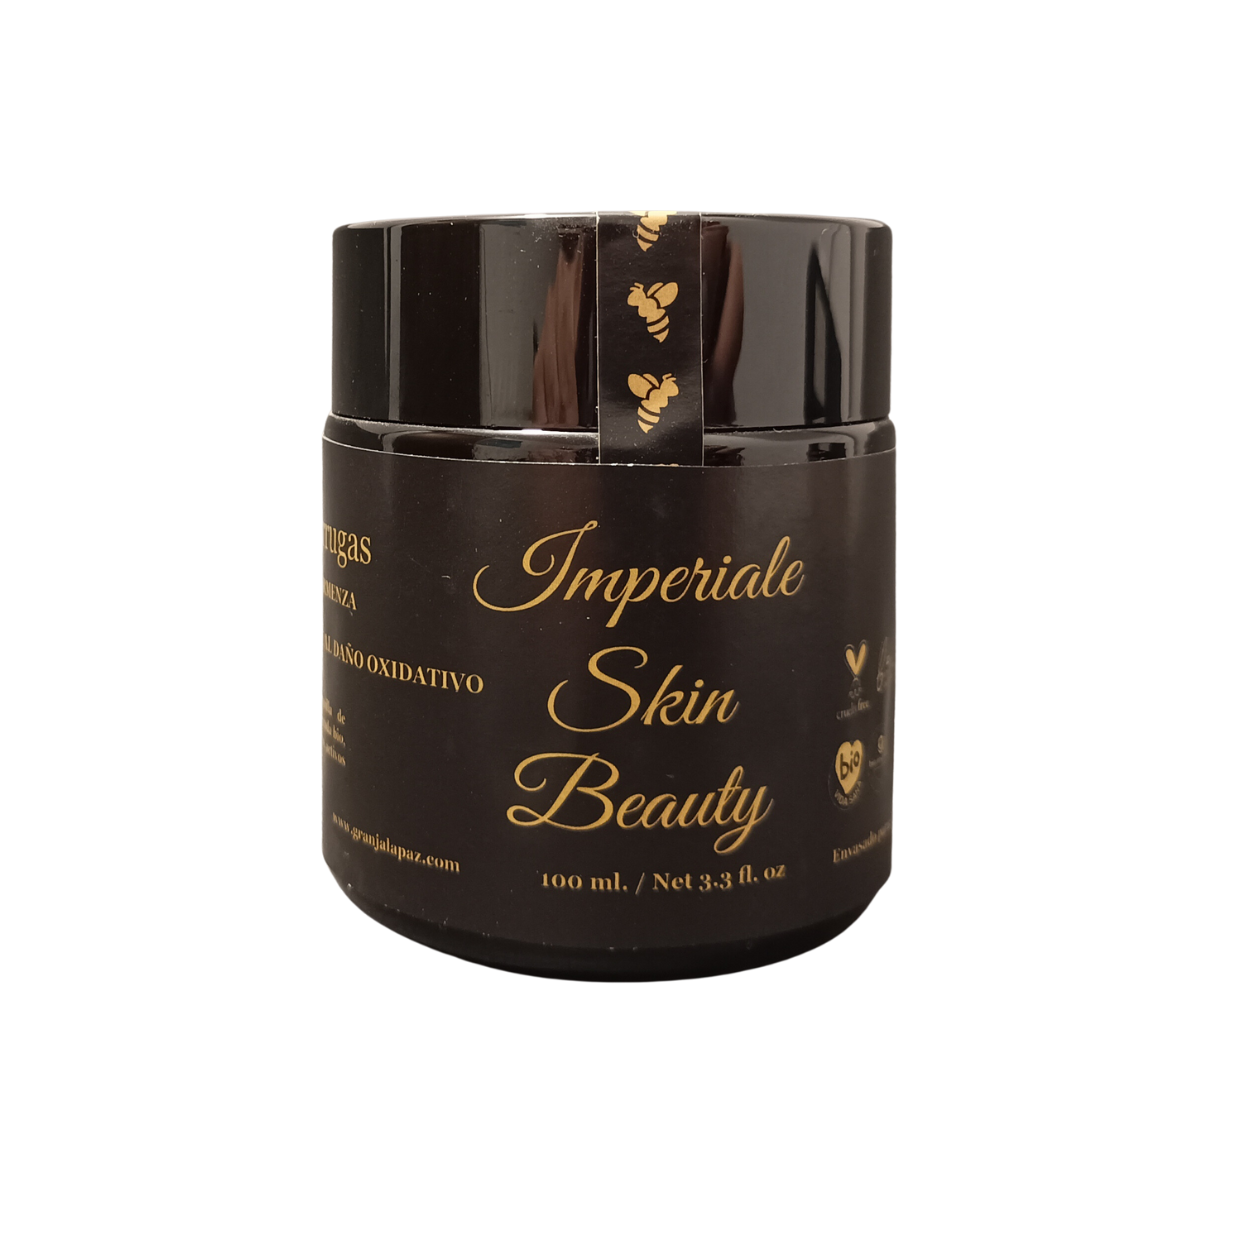 imperiale skin beauty Crema ecologica de noche granja la paz 